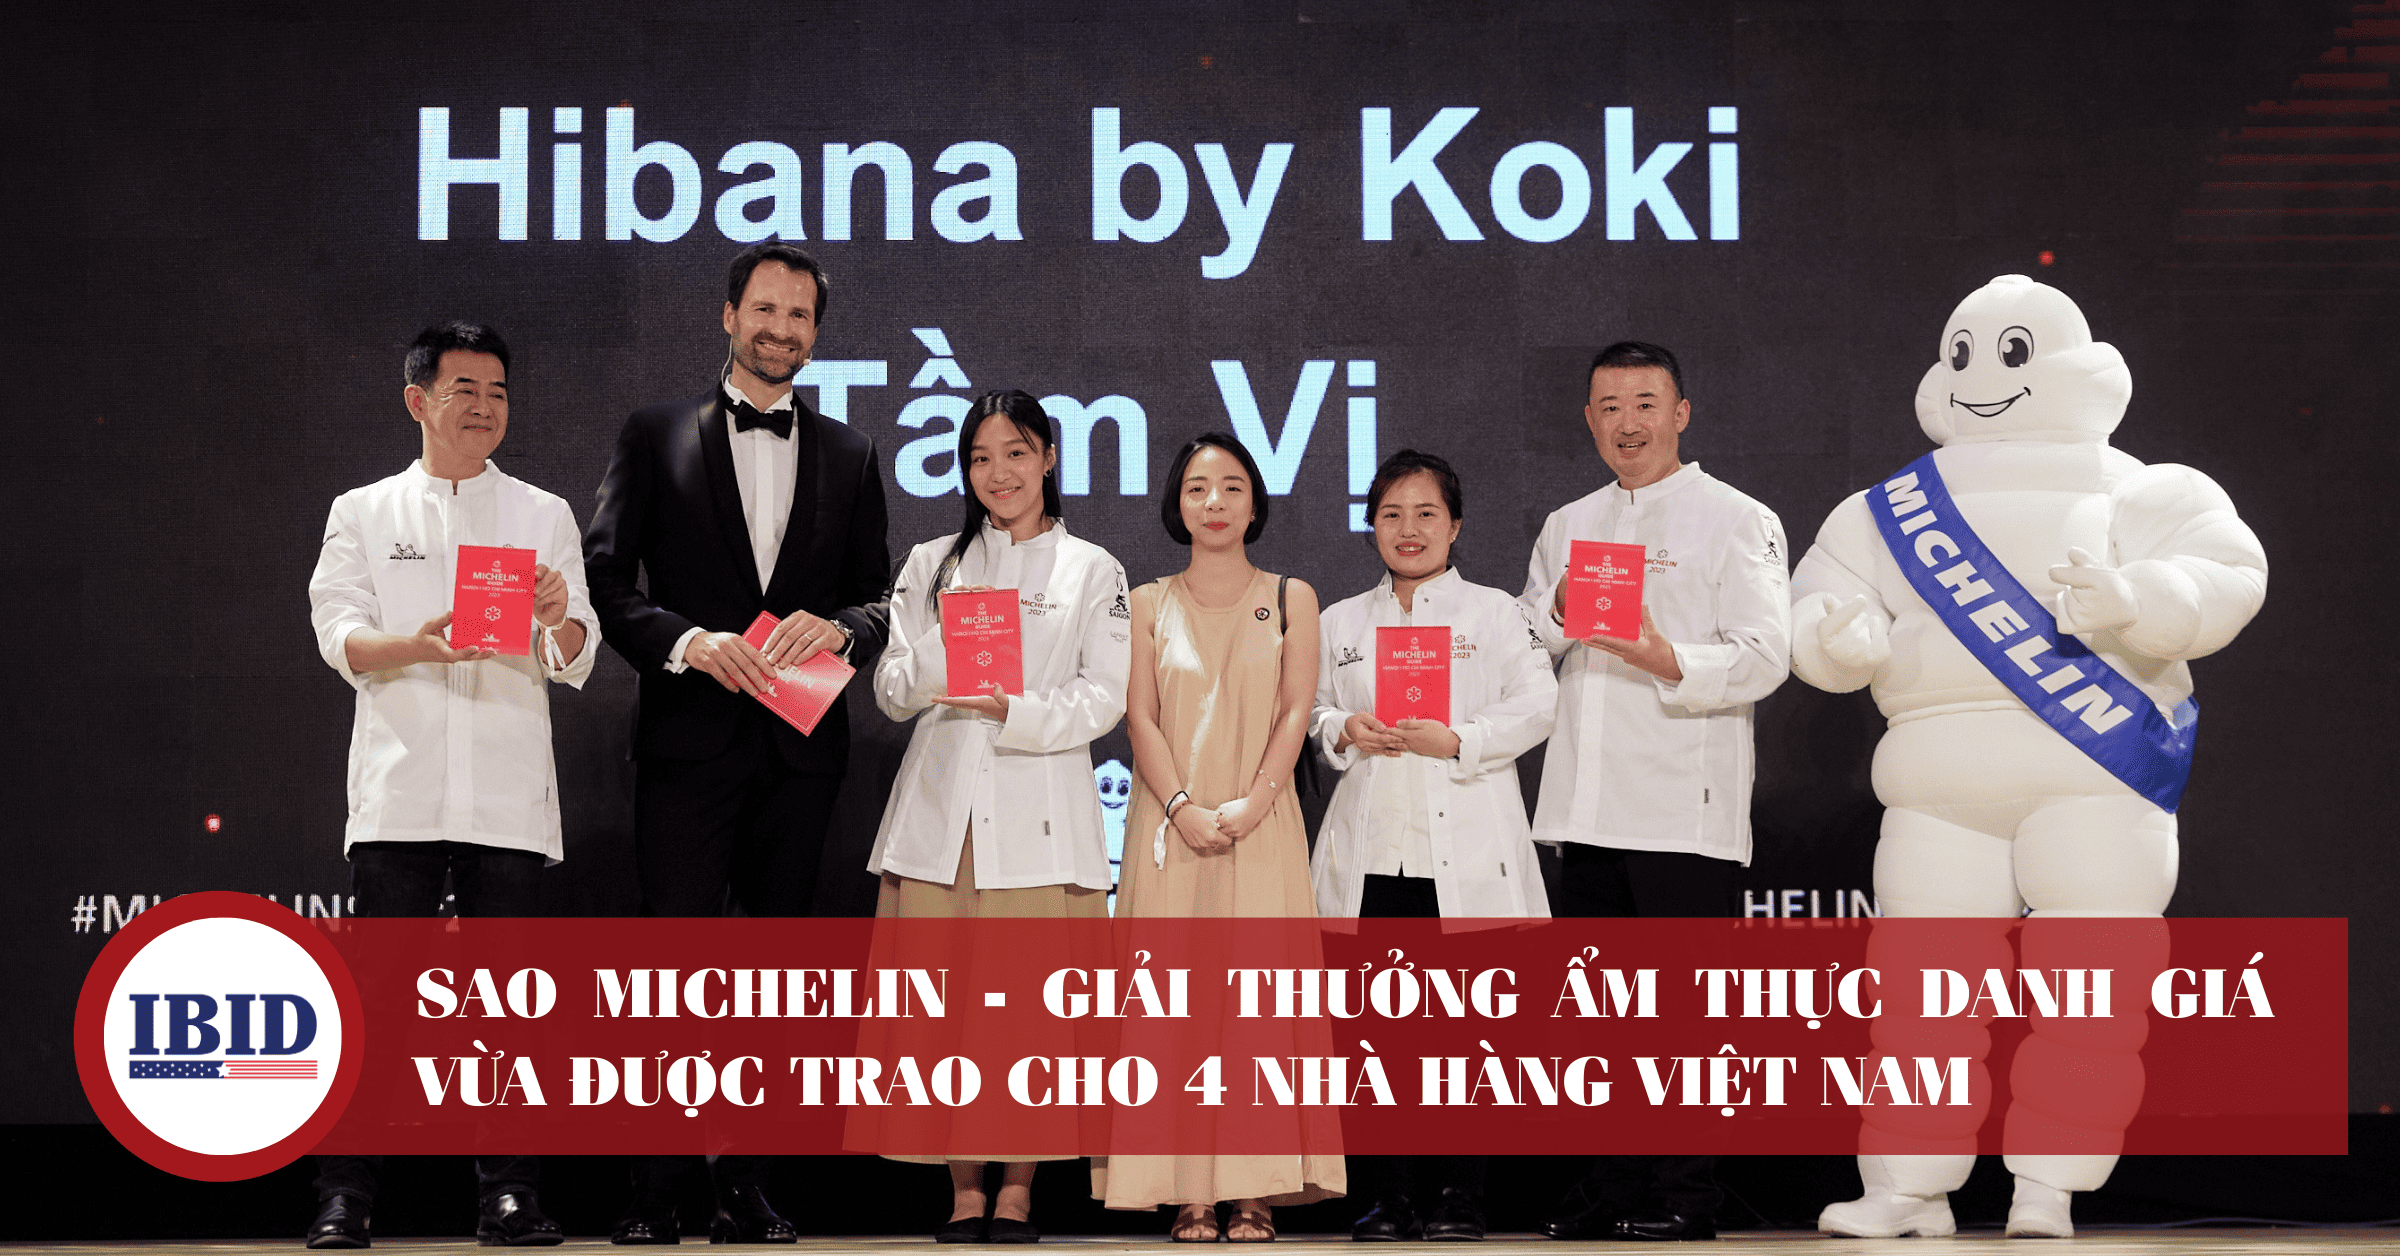 4 nhà hàng Việt Nam nhận được sao Michelin: Anăn Saigon, Gia, Hibana by Koki và Tầm Vị